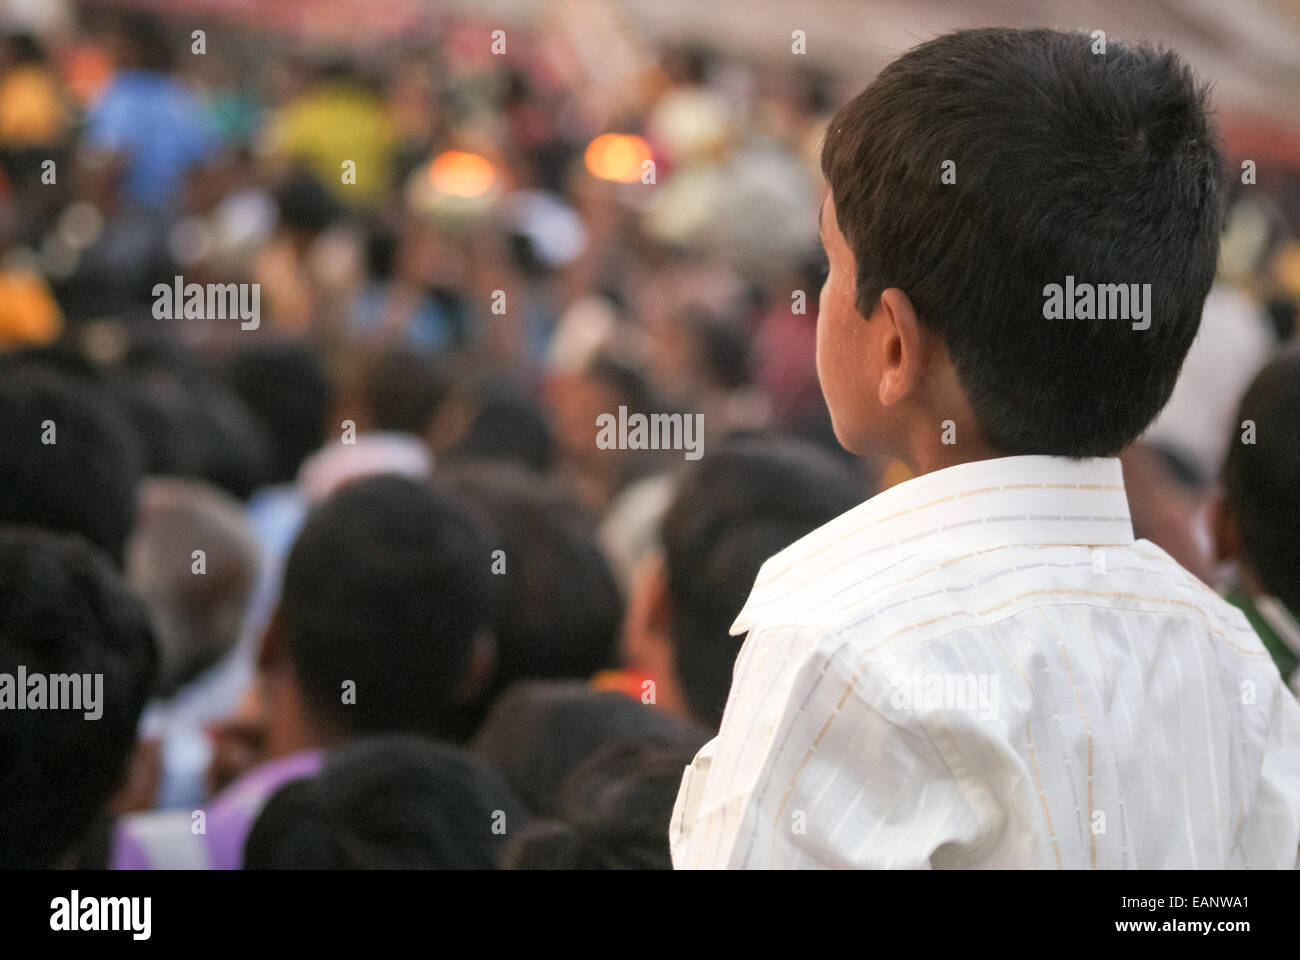 Un garçon regarde une parade au-dessus de la foule Banque D'Images